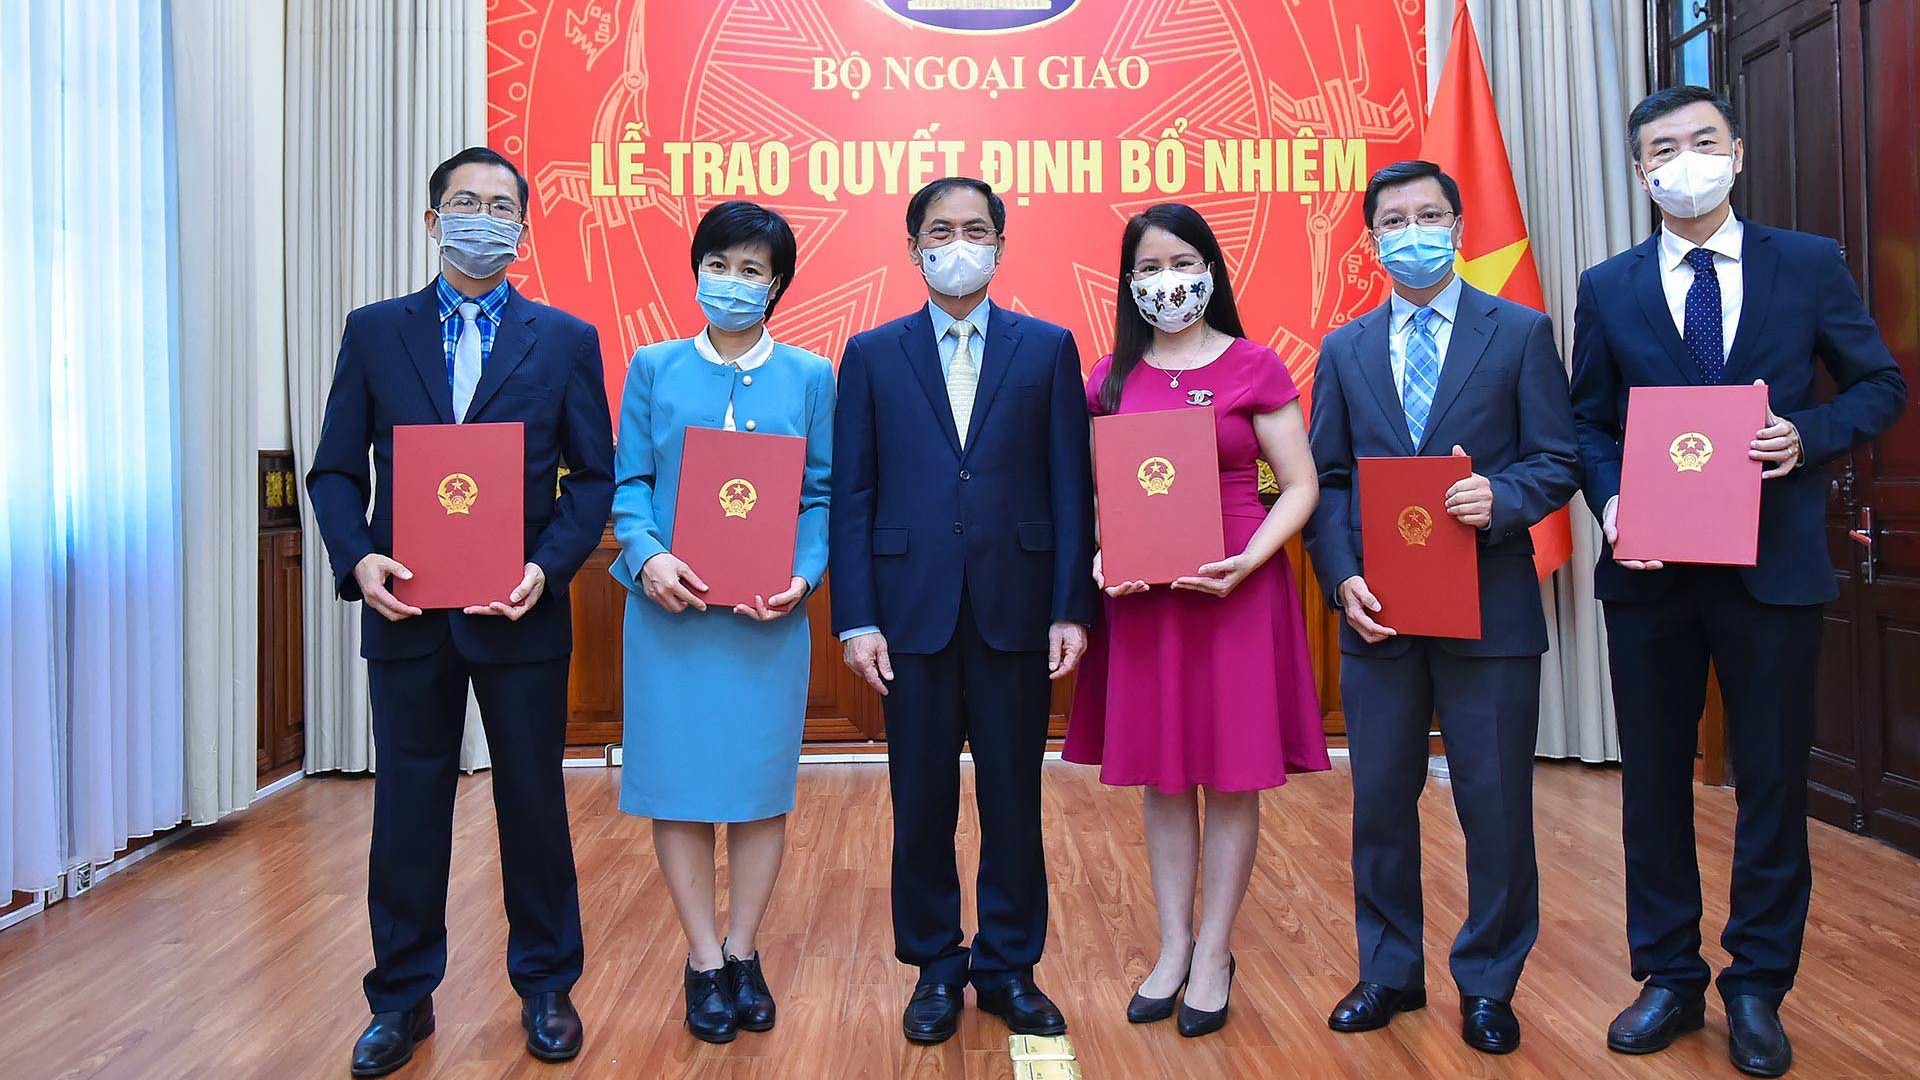 Bộ trưởng Ngoại giao Bùi Thanh Sơn trao quyết định bổ nhiệm cấp Vụ trưởng của Bộ Ngoại giao